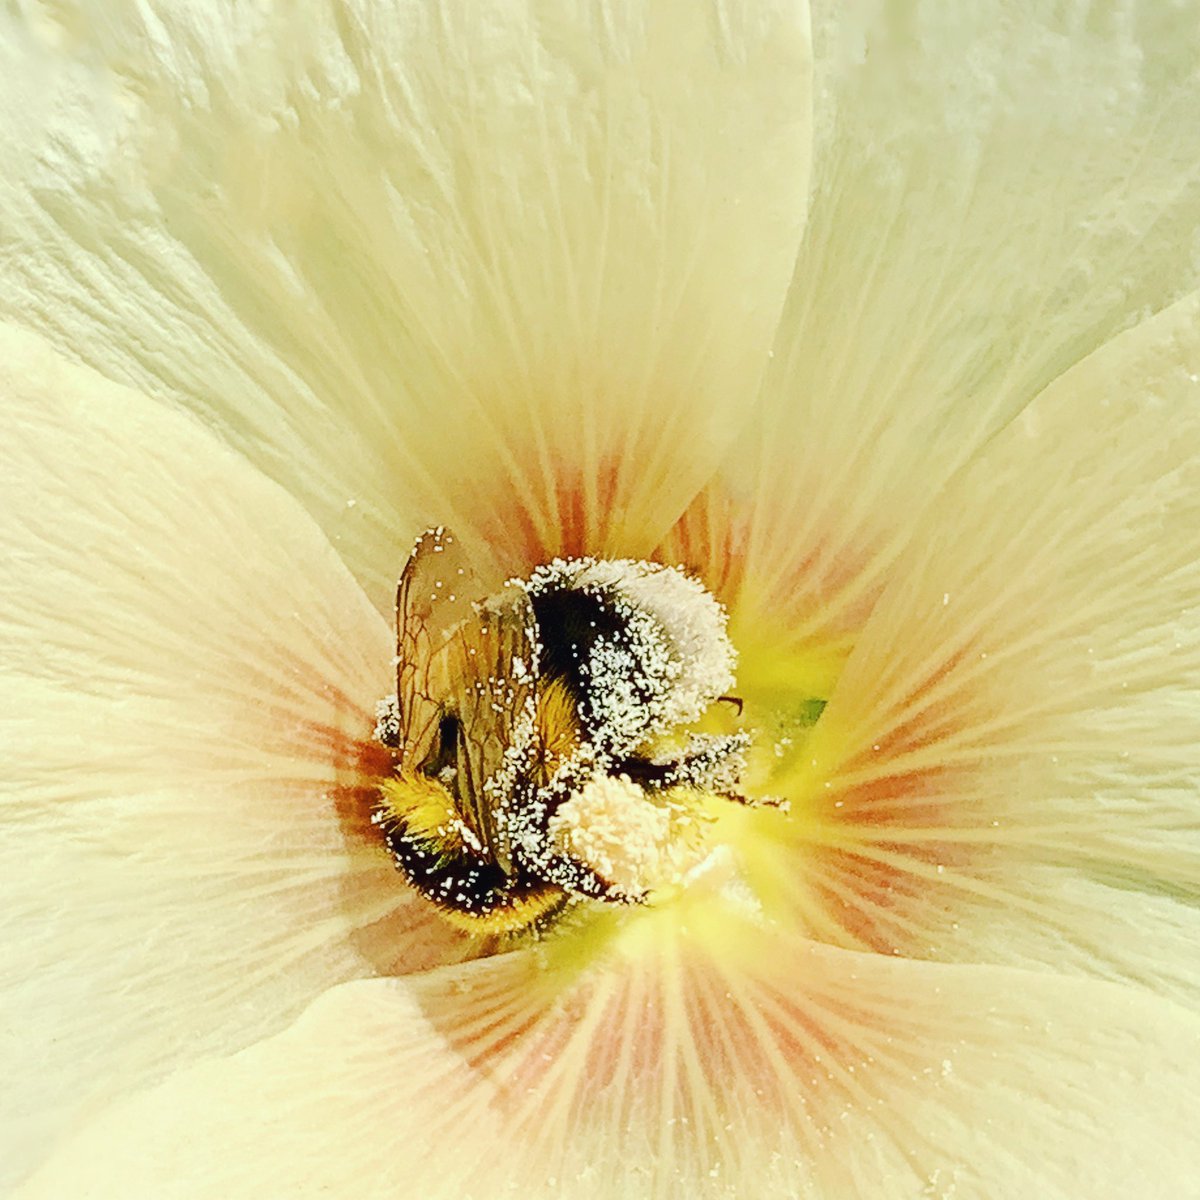 Ja ja, in de bloem met de iPhone op zoek naar bijtjes! Het is weer de tijd van het jaar lieve mensen. 

#shotoniphone 🐝🌼💛